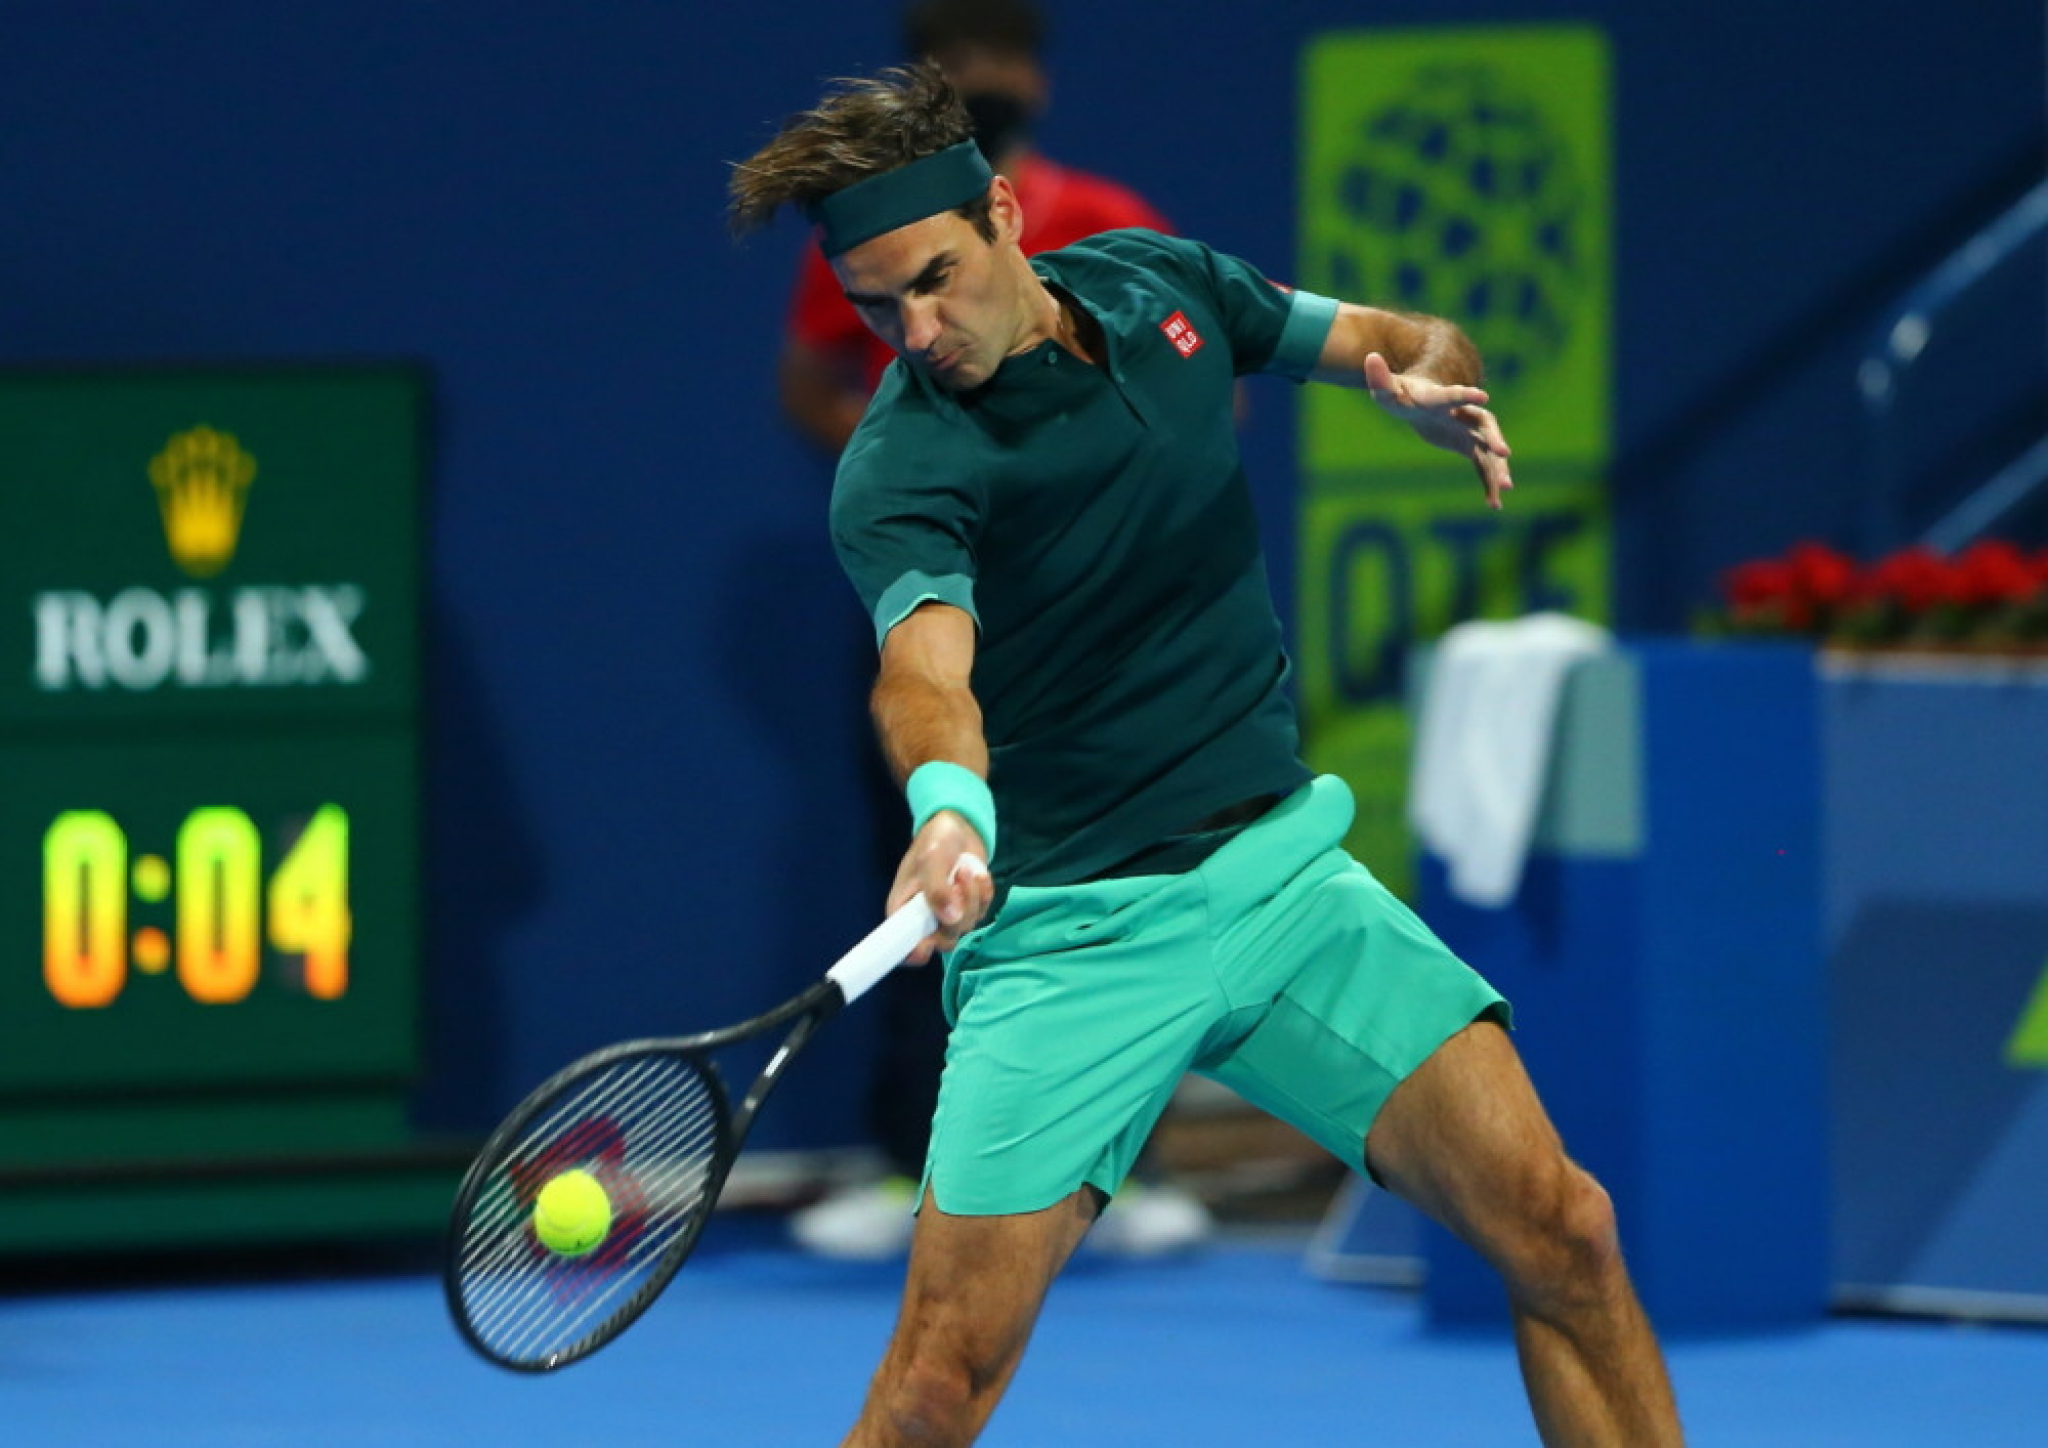 NEČUVENO! Đoković je drugi! ATP ponovo favorizuje Federera, Rodžer je 250. na svetu, ali ga čuvaju u Top 10?